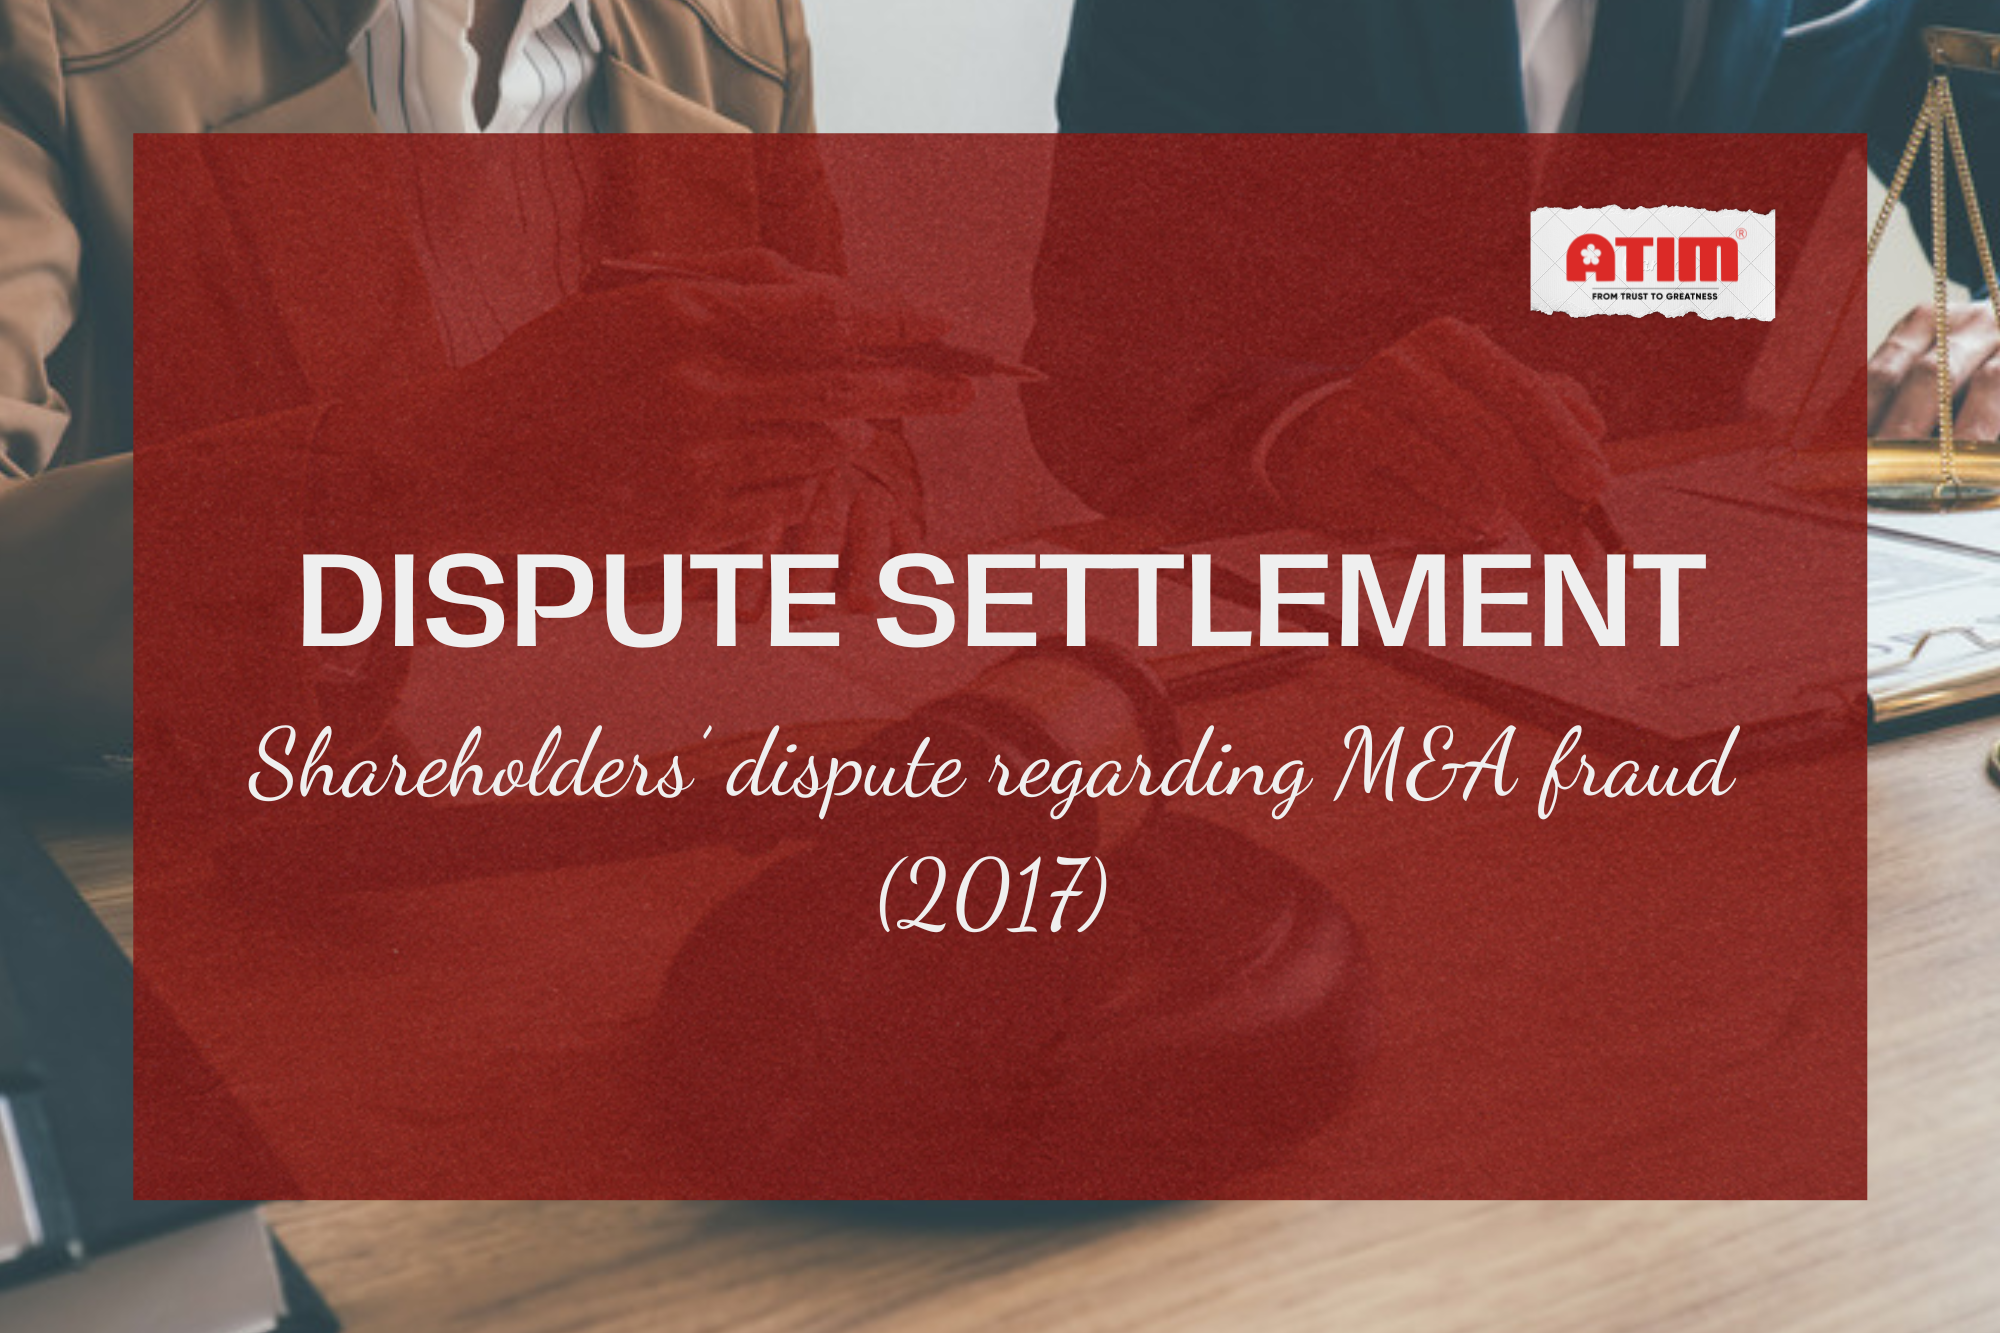 Dispute Settlement - Shareholder's Dispute regarding M&A fraud